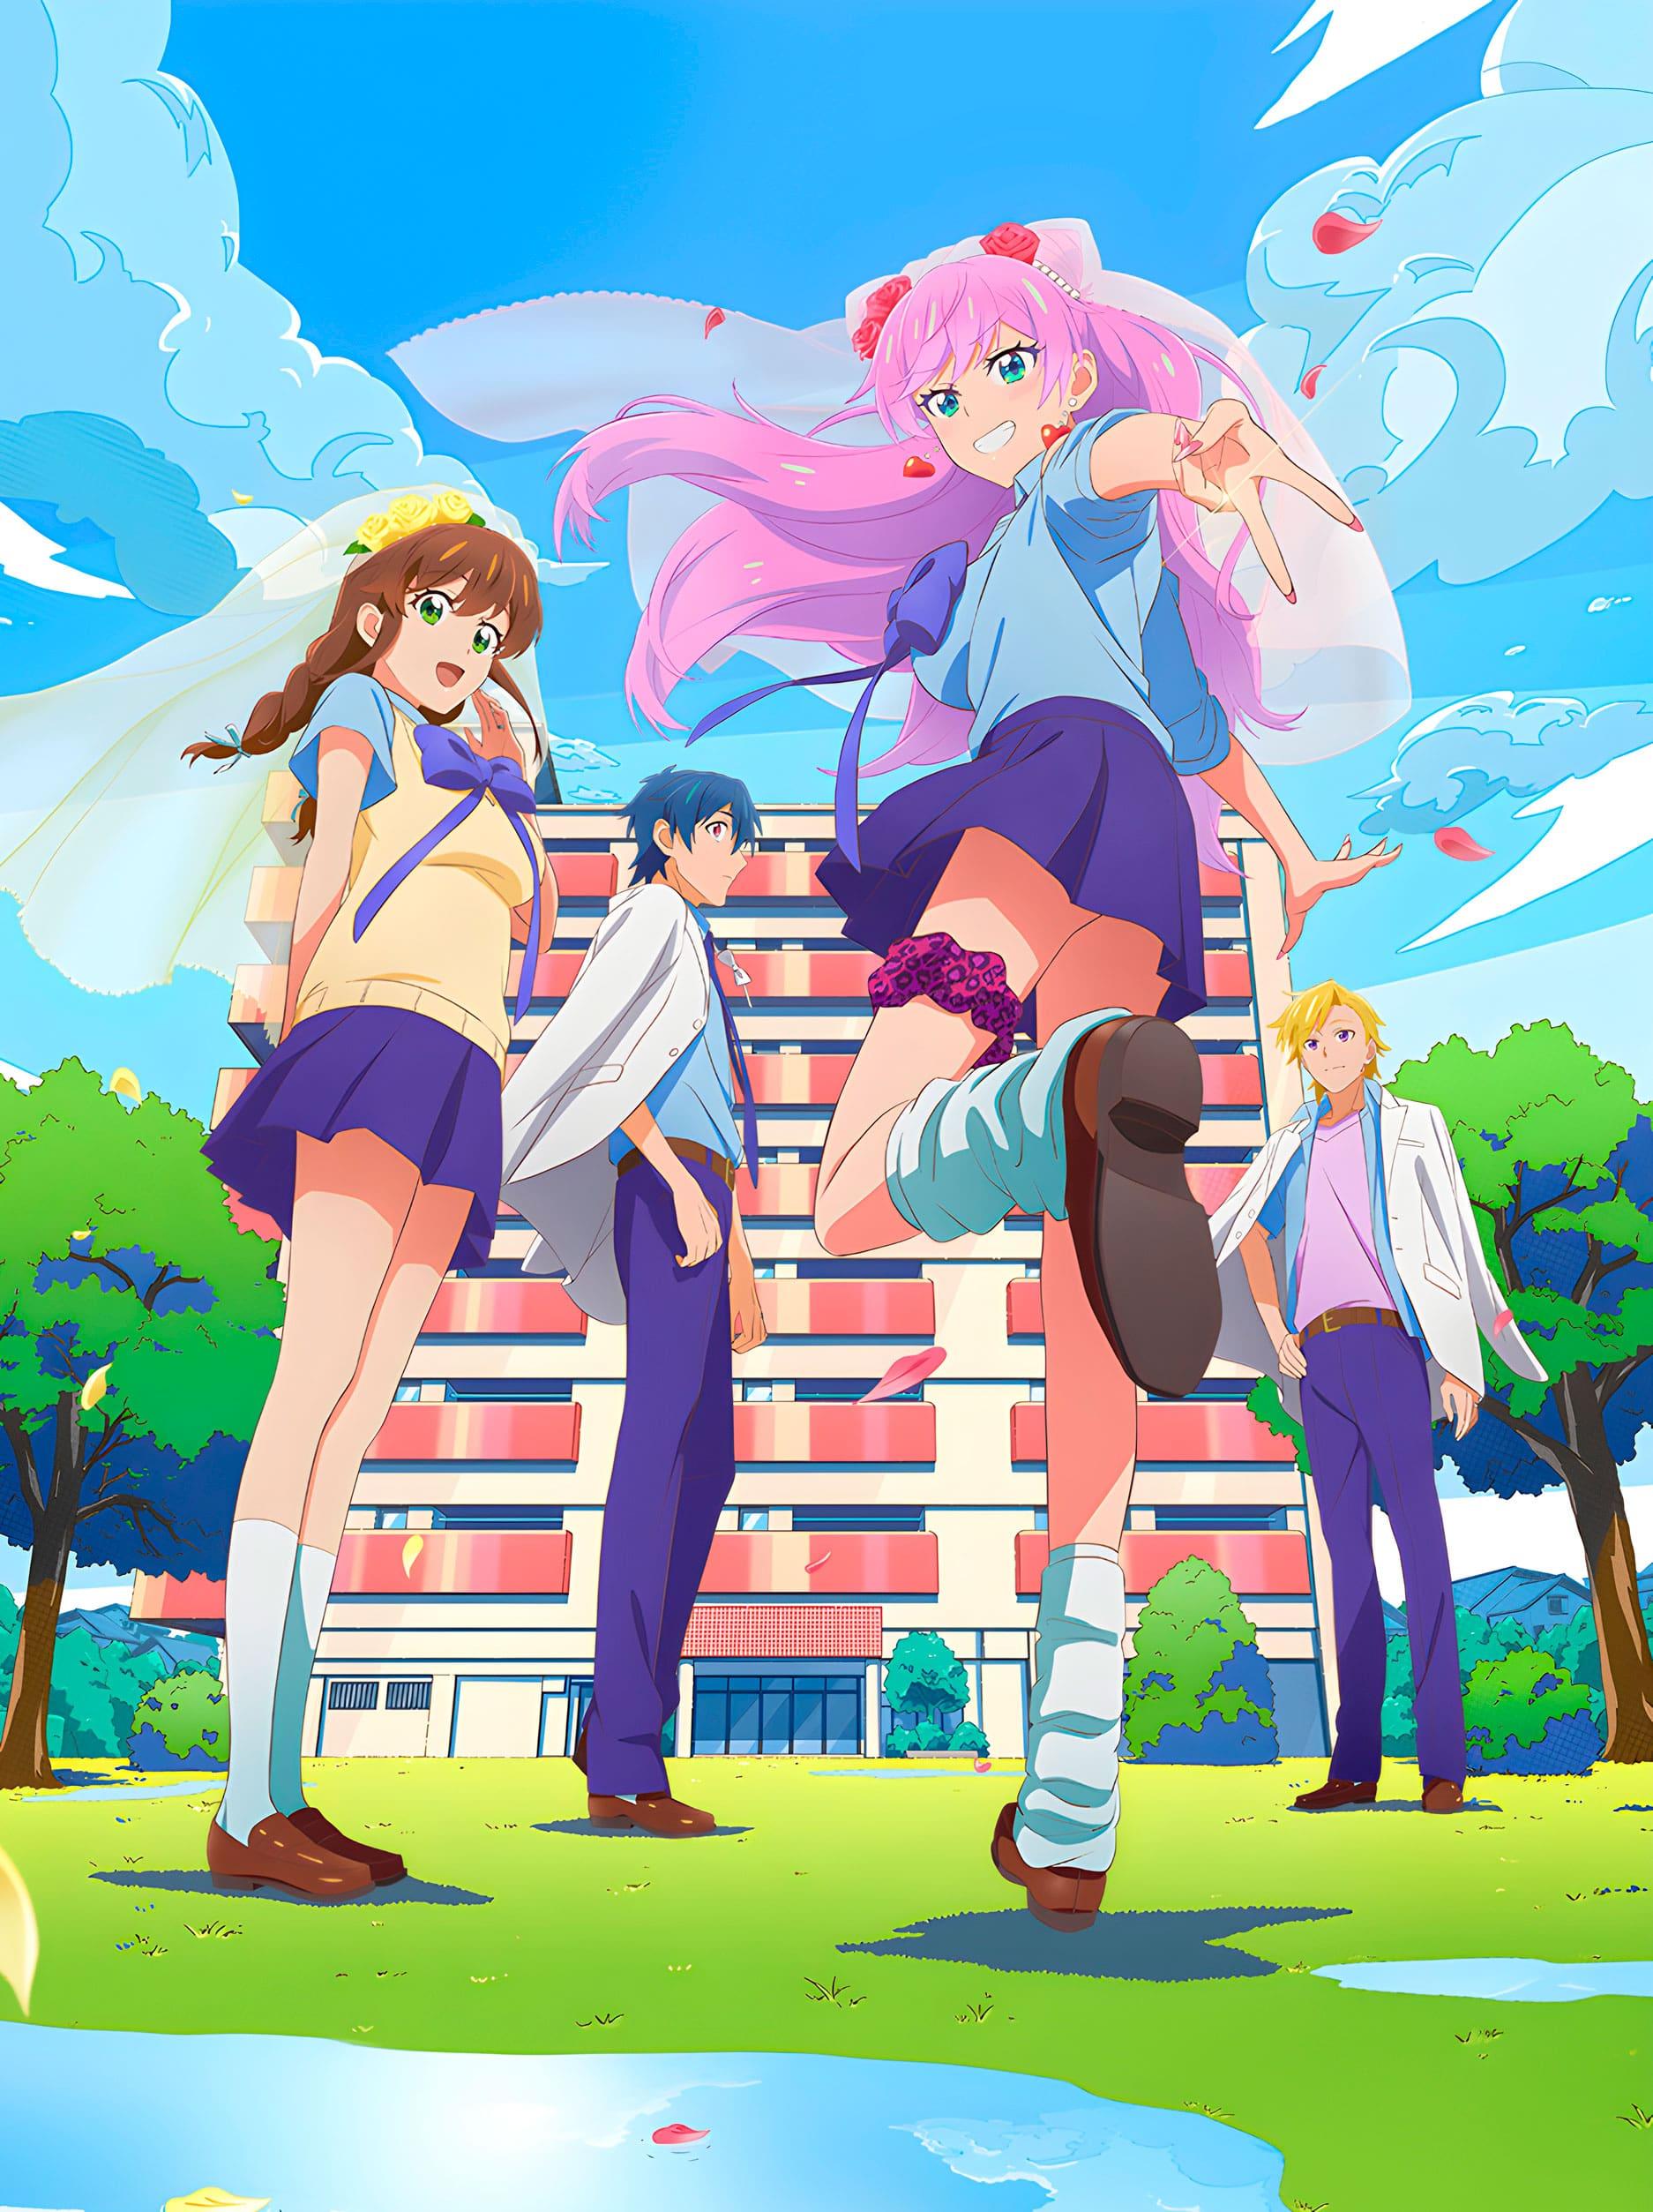 Adaptação em anime para o mangá de comédia romântica Fuufu Ijou